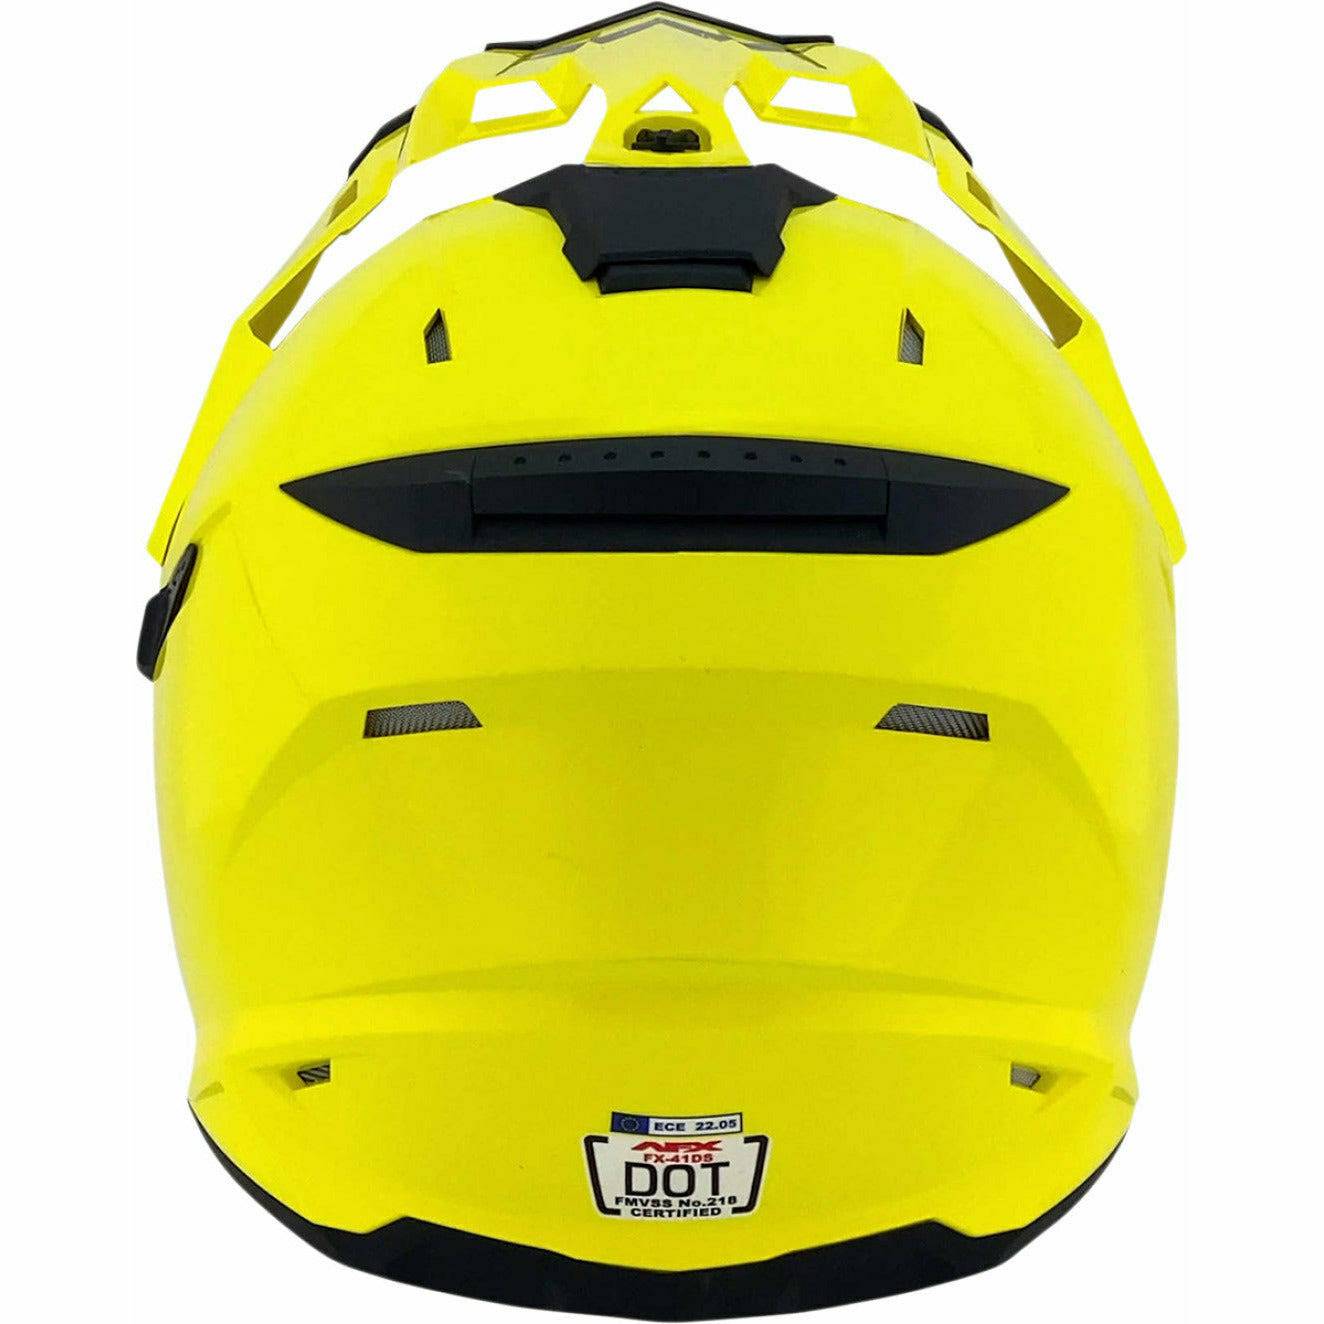 AFX FX-41DS Helmet